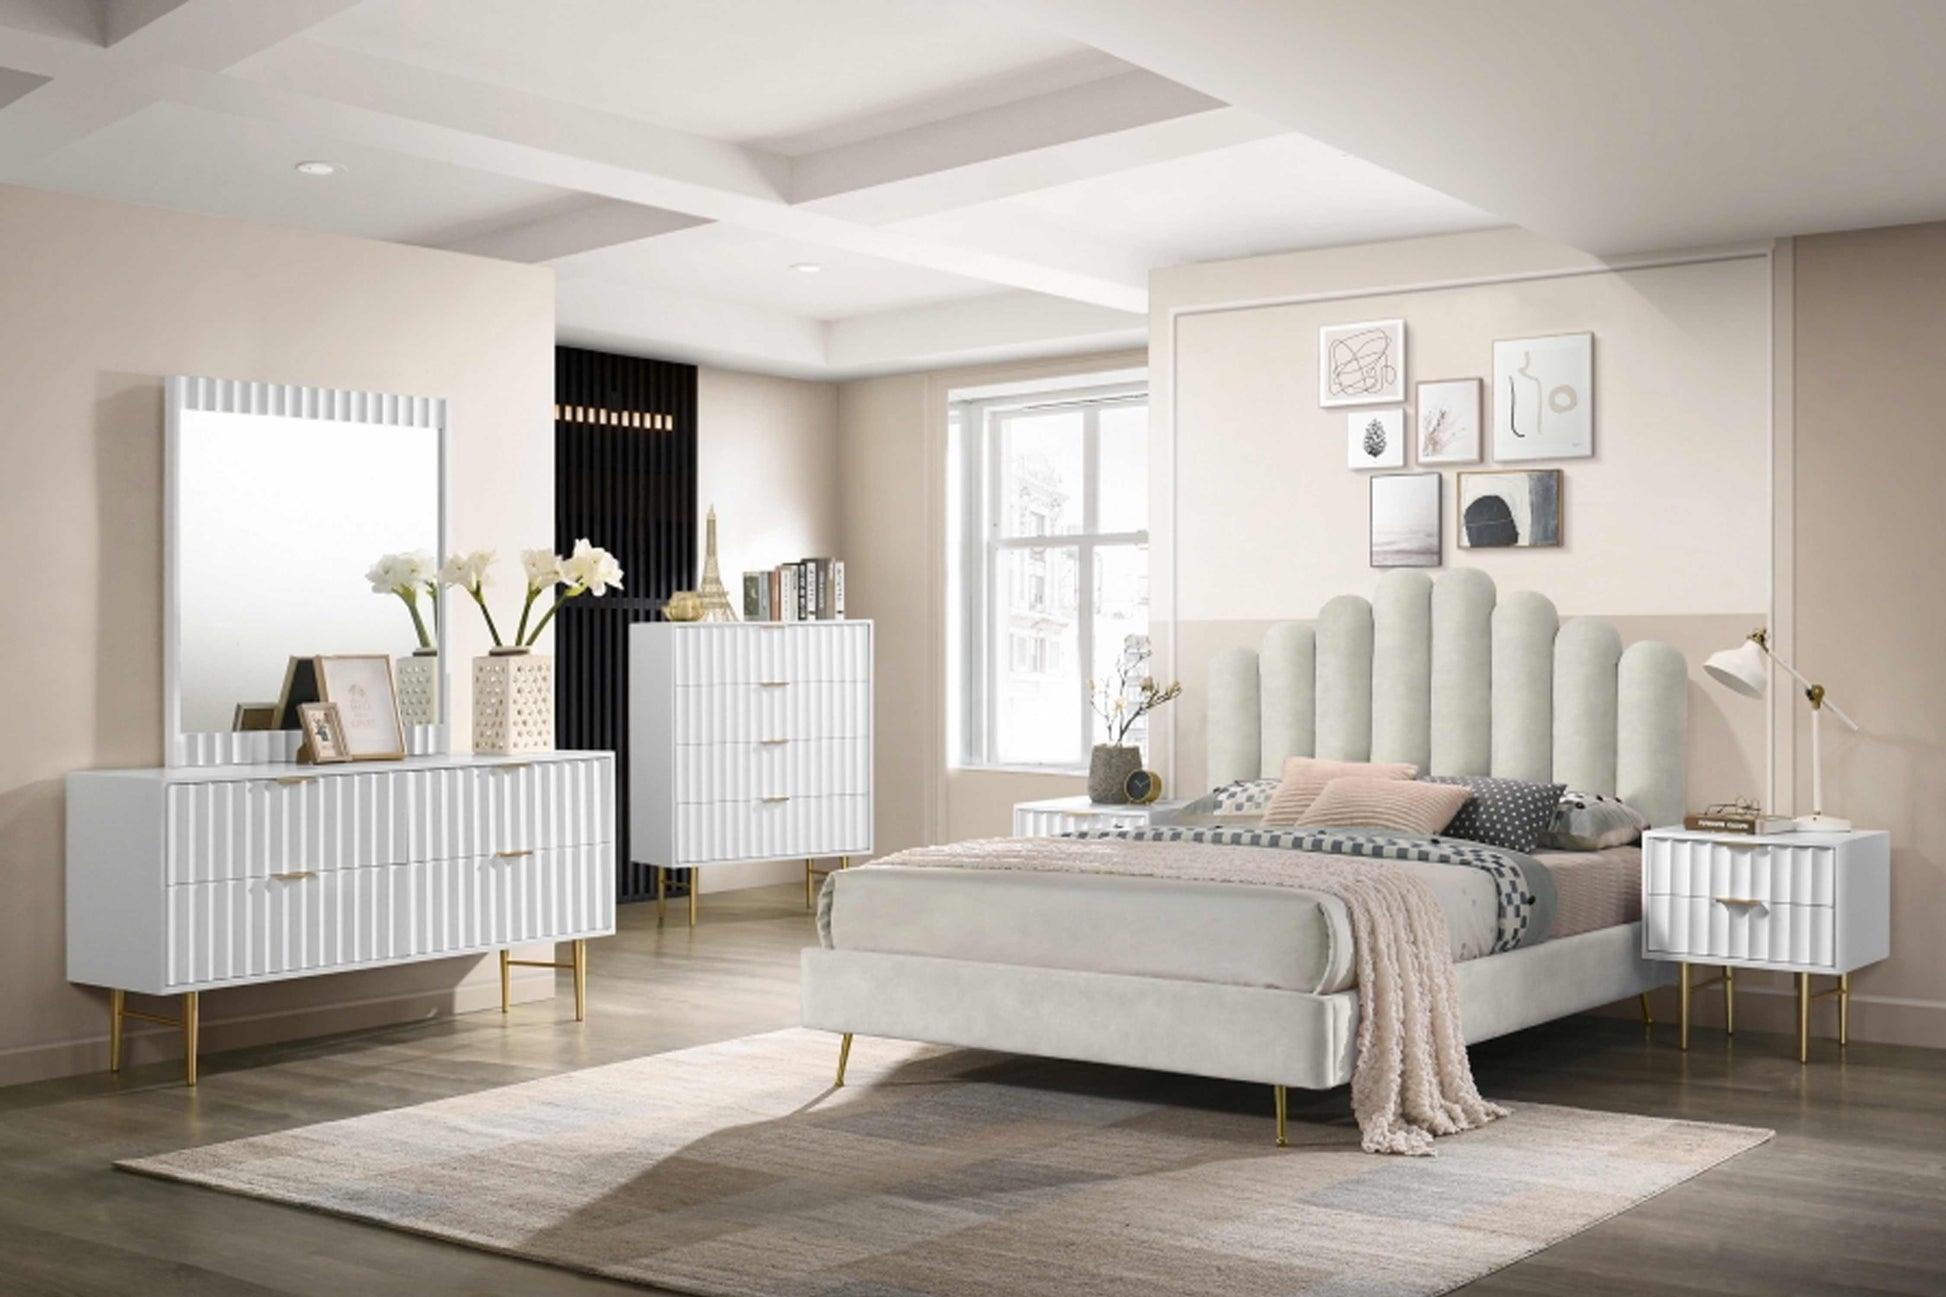 Modernist Dresser SKU: 801-D - Venini Furniture 